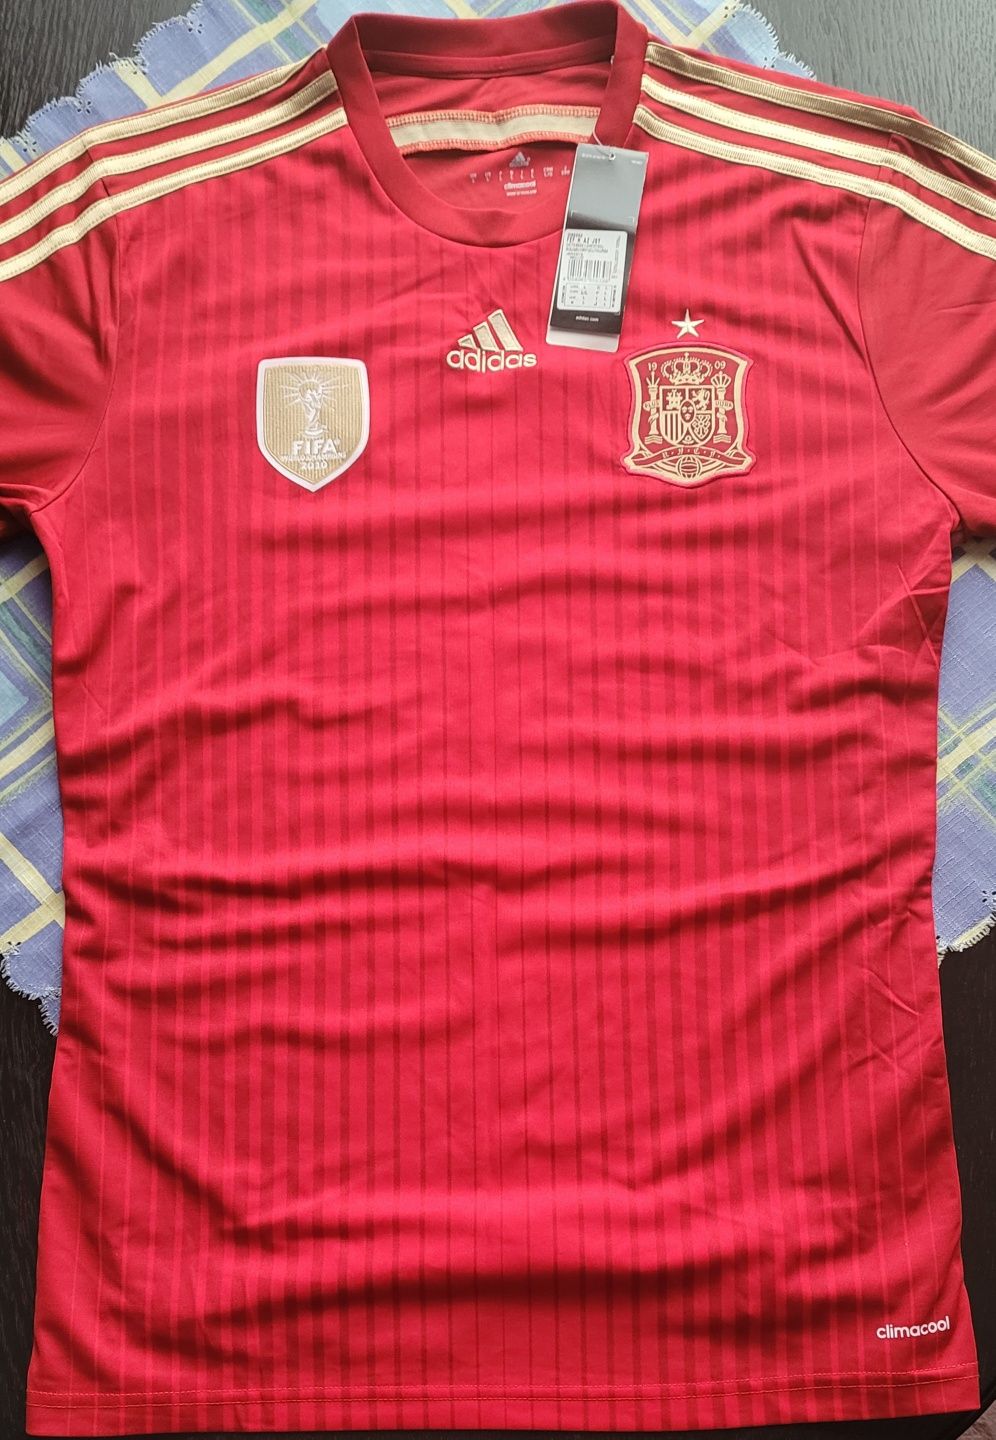 Hiszpania koszulka Adidas  Mś 2014  Nowa rozmiar L (G85242 )